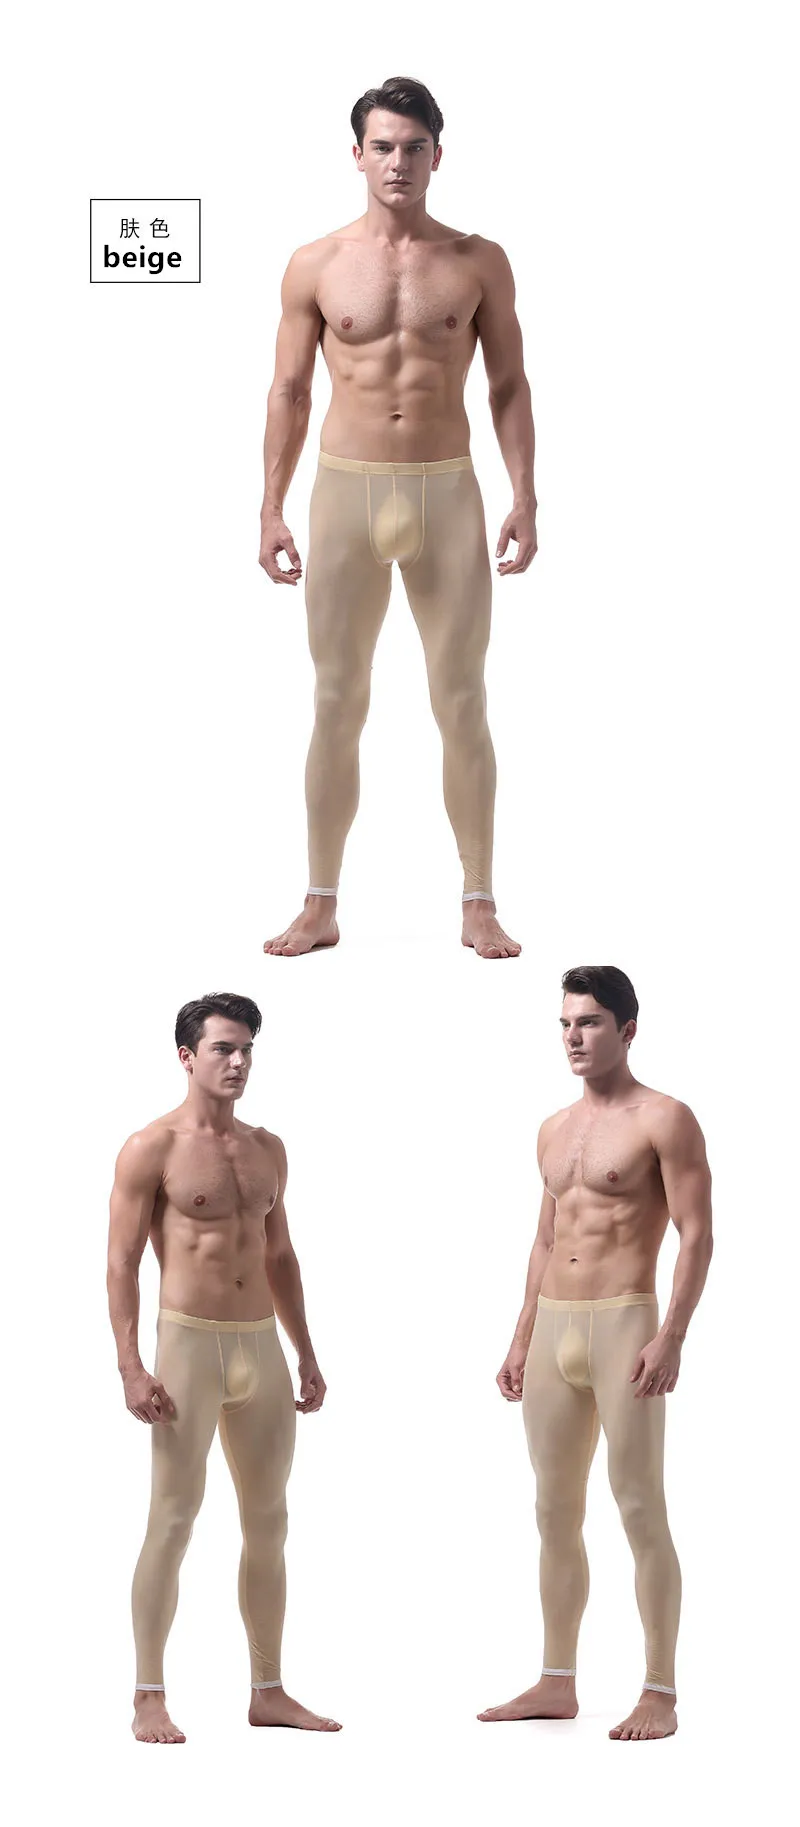 Мужские кальсоны теплые брюки тонкие нейлоновые прозрачные привлекательное нижнее белье для геев Домашняя одежда мужские облегающие леггинсы подштанники размер XL